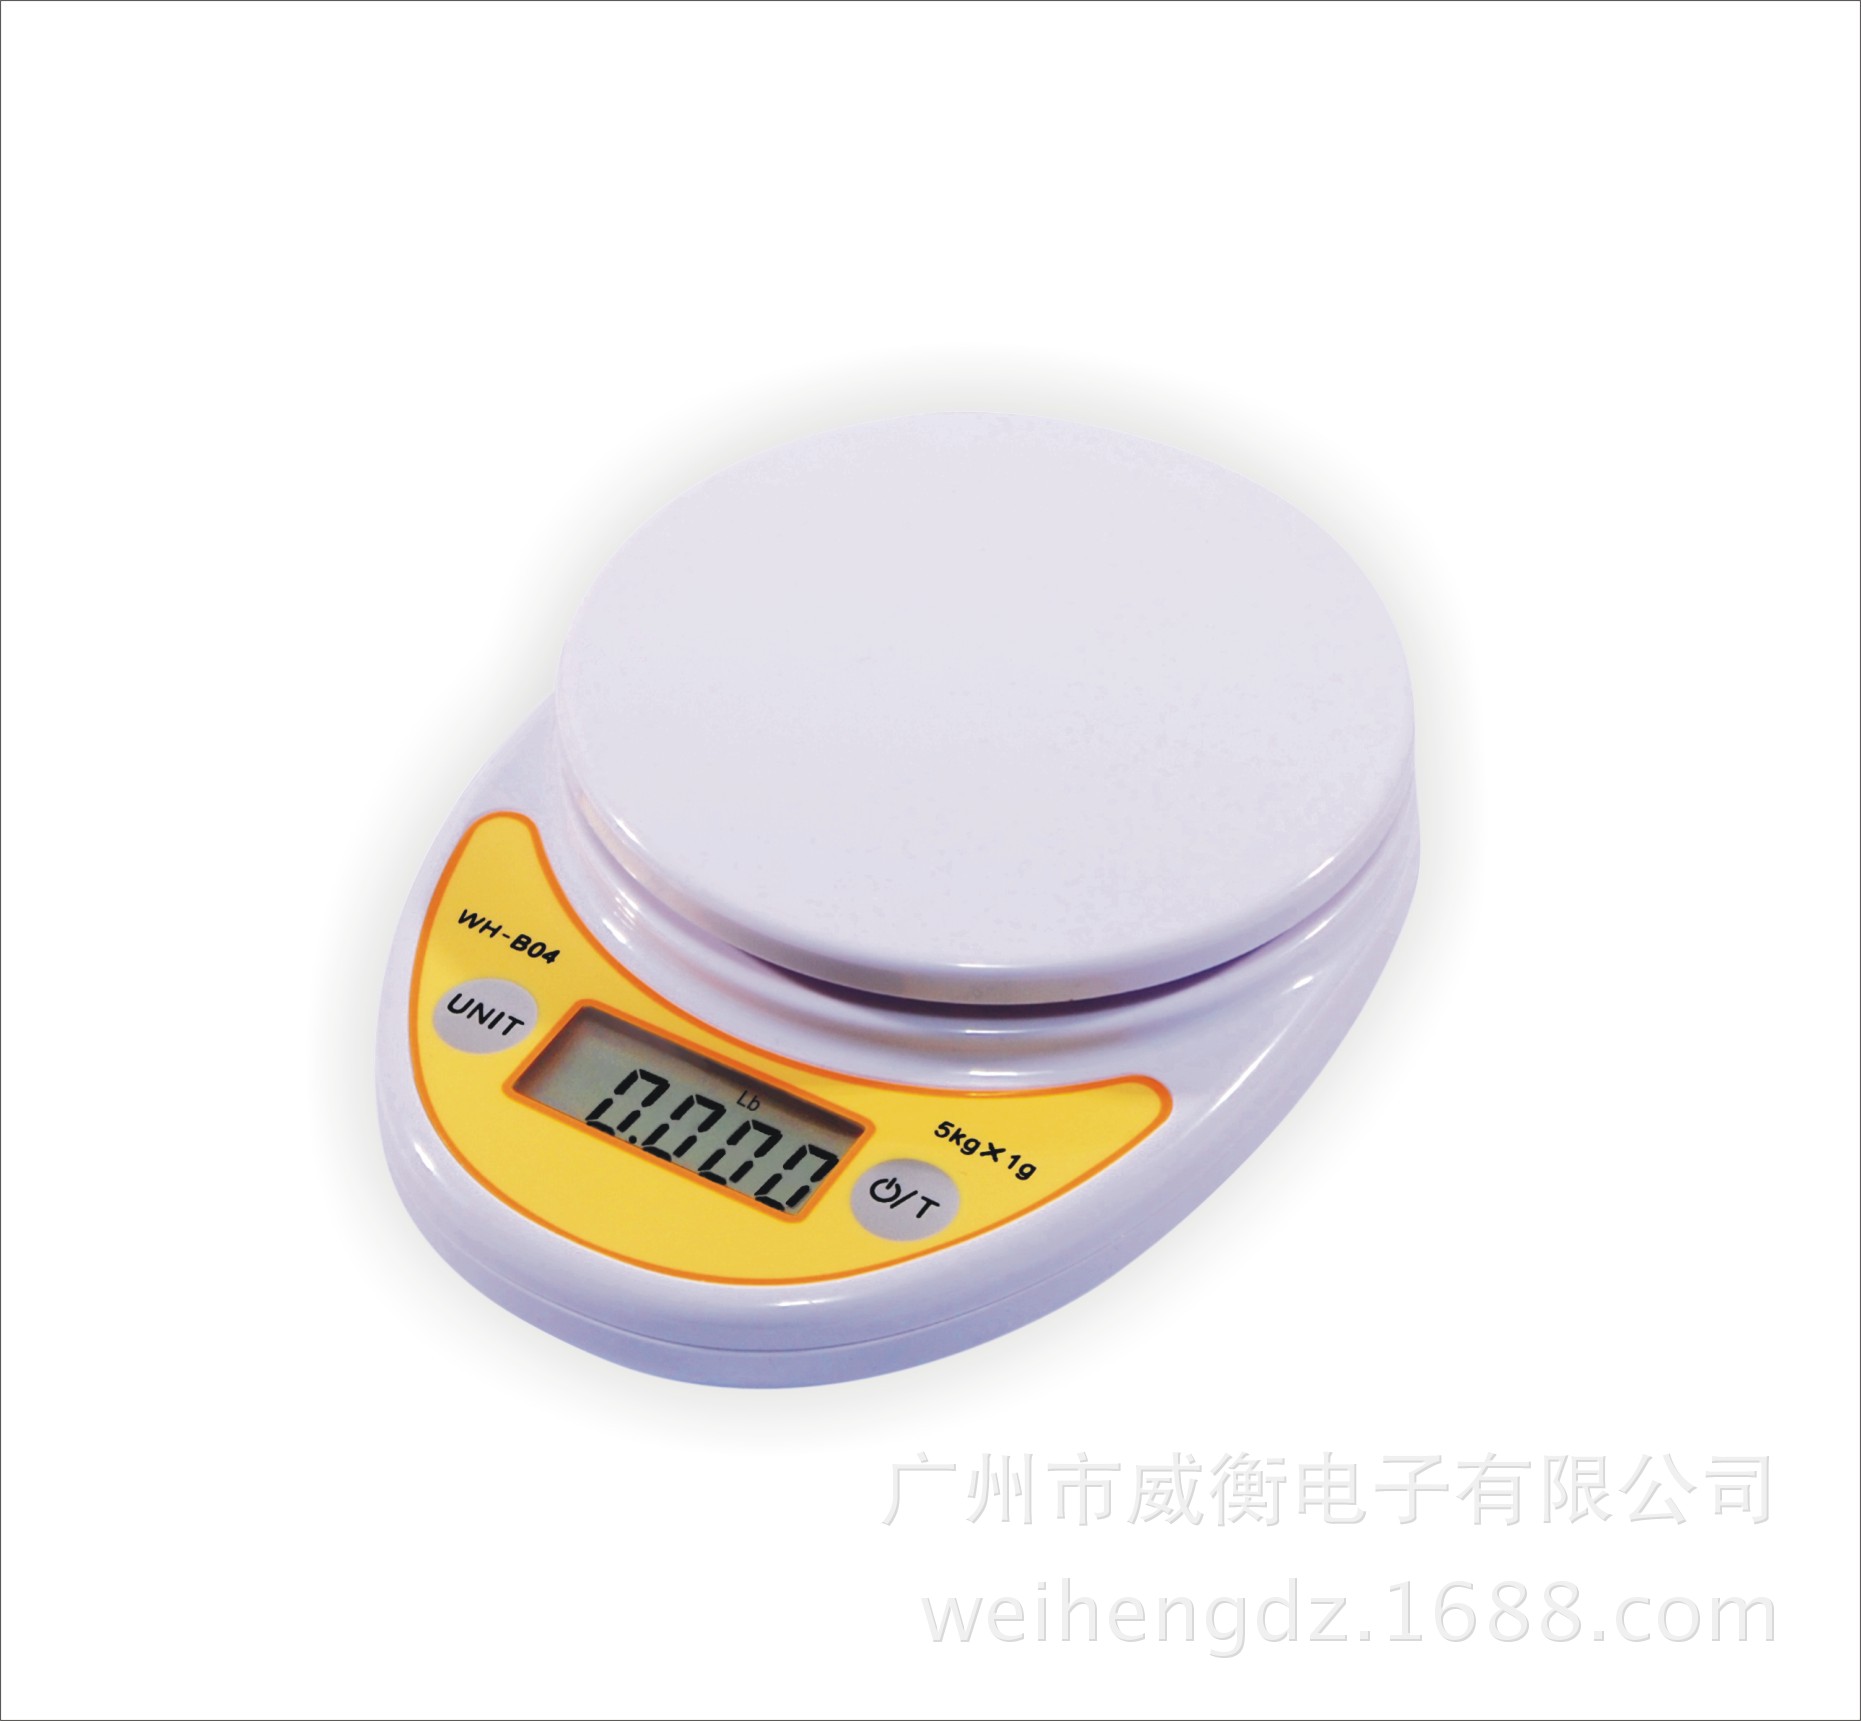 1g】广东广州wh-b04威衡电子厨房秤营养配餐电子秤